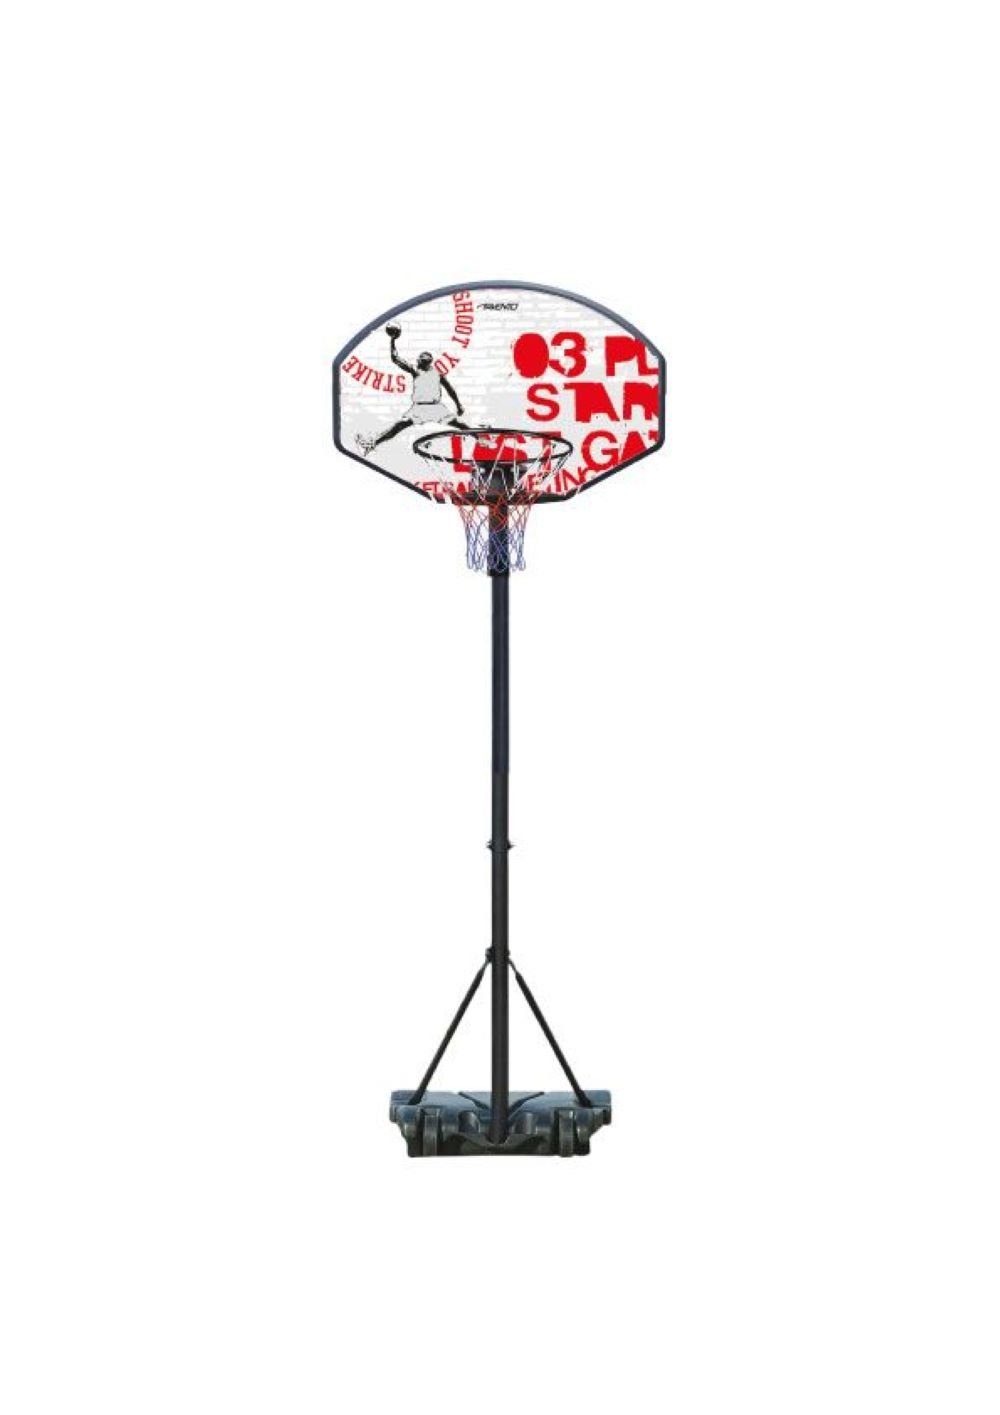 LeNoSa Basketballkorb NEWPORT KORBANLAGE • CHAMPION SHOOT •  BASKETBALLSTÄNDER • verstellbar 140 cm bis max. ca. 213 cm, höhenverstellbar